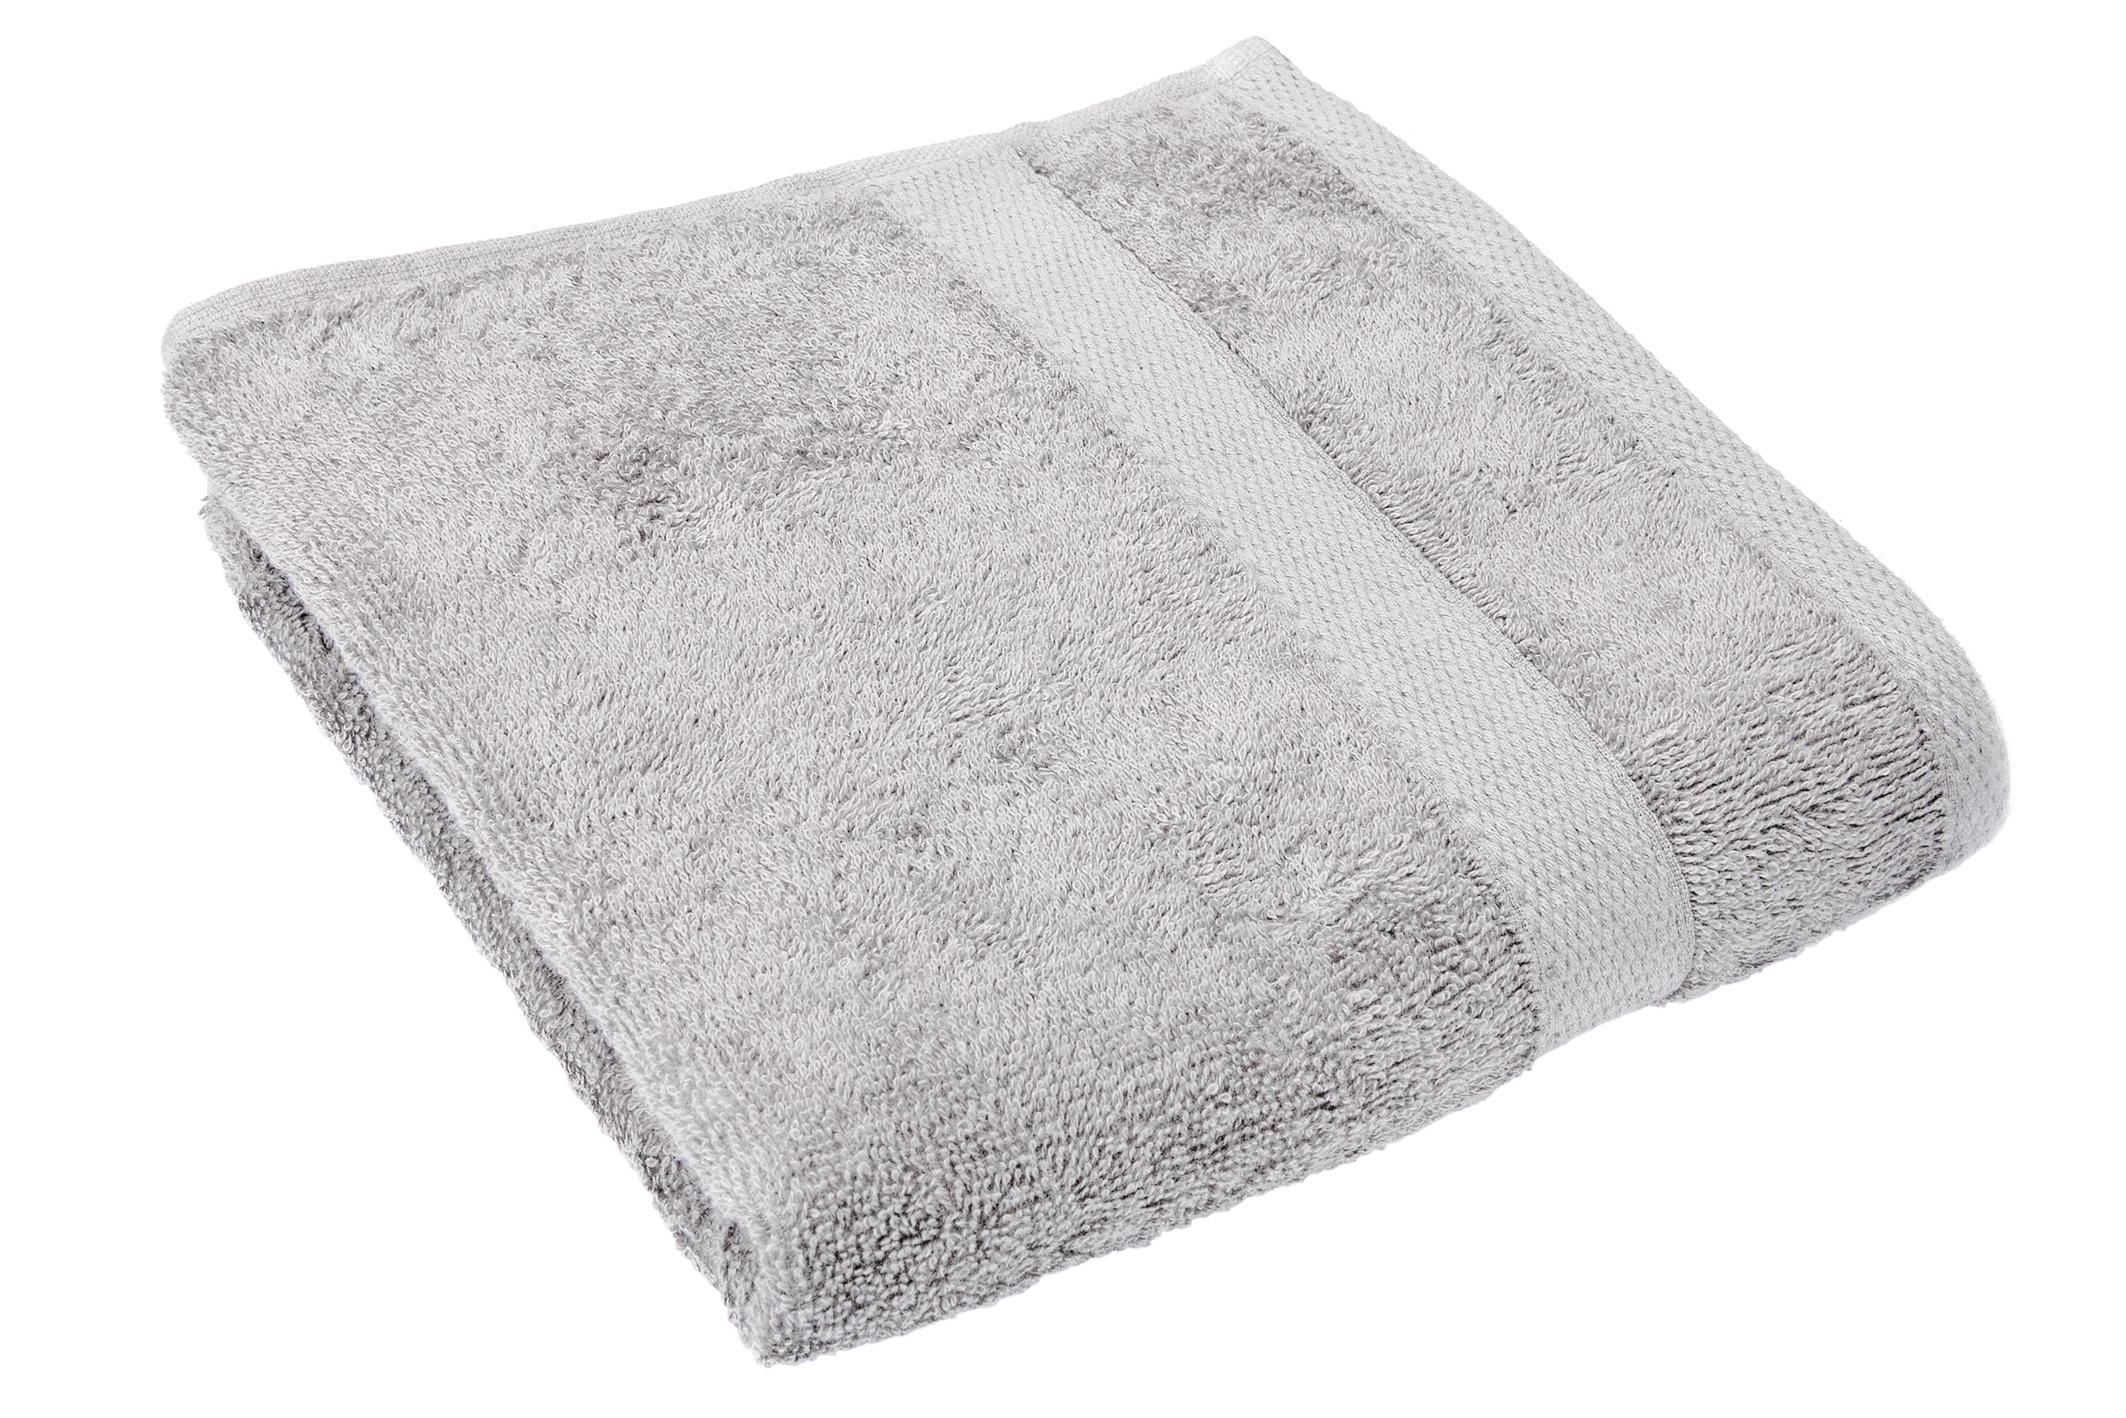 Bath sheet 70x140cm, cool grey